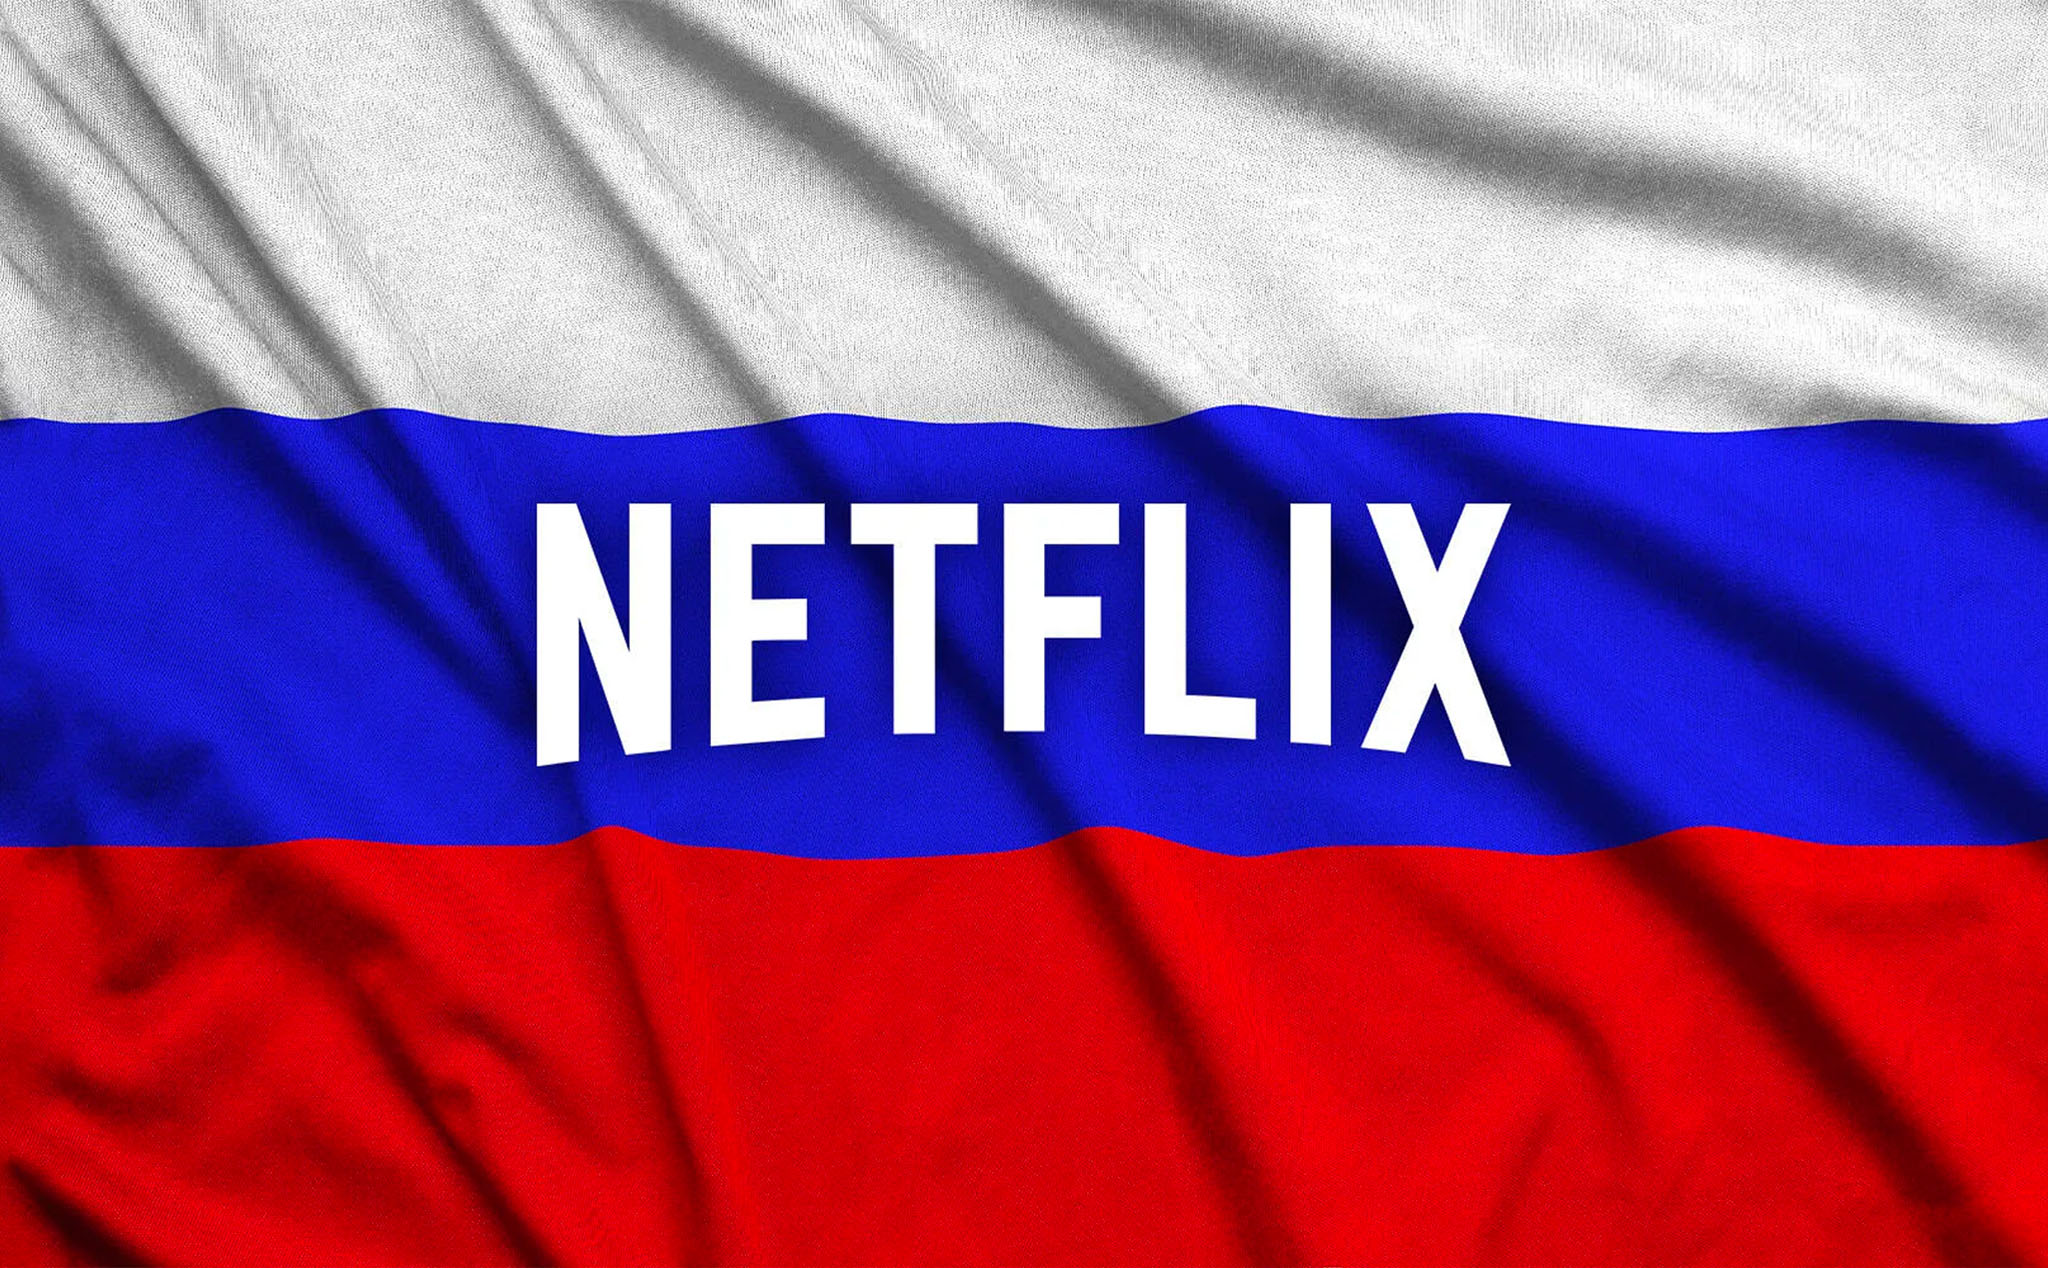 Nga yêu cầu Netflix và các dịch vụ streaming khác phải chiếu thêm các kênh truyền hình địa phương